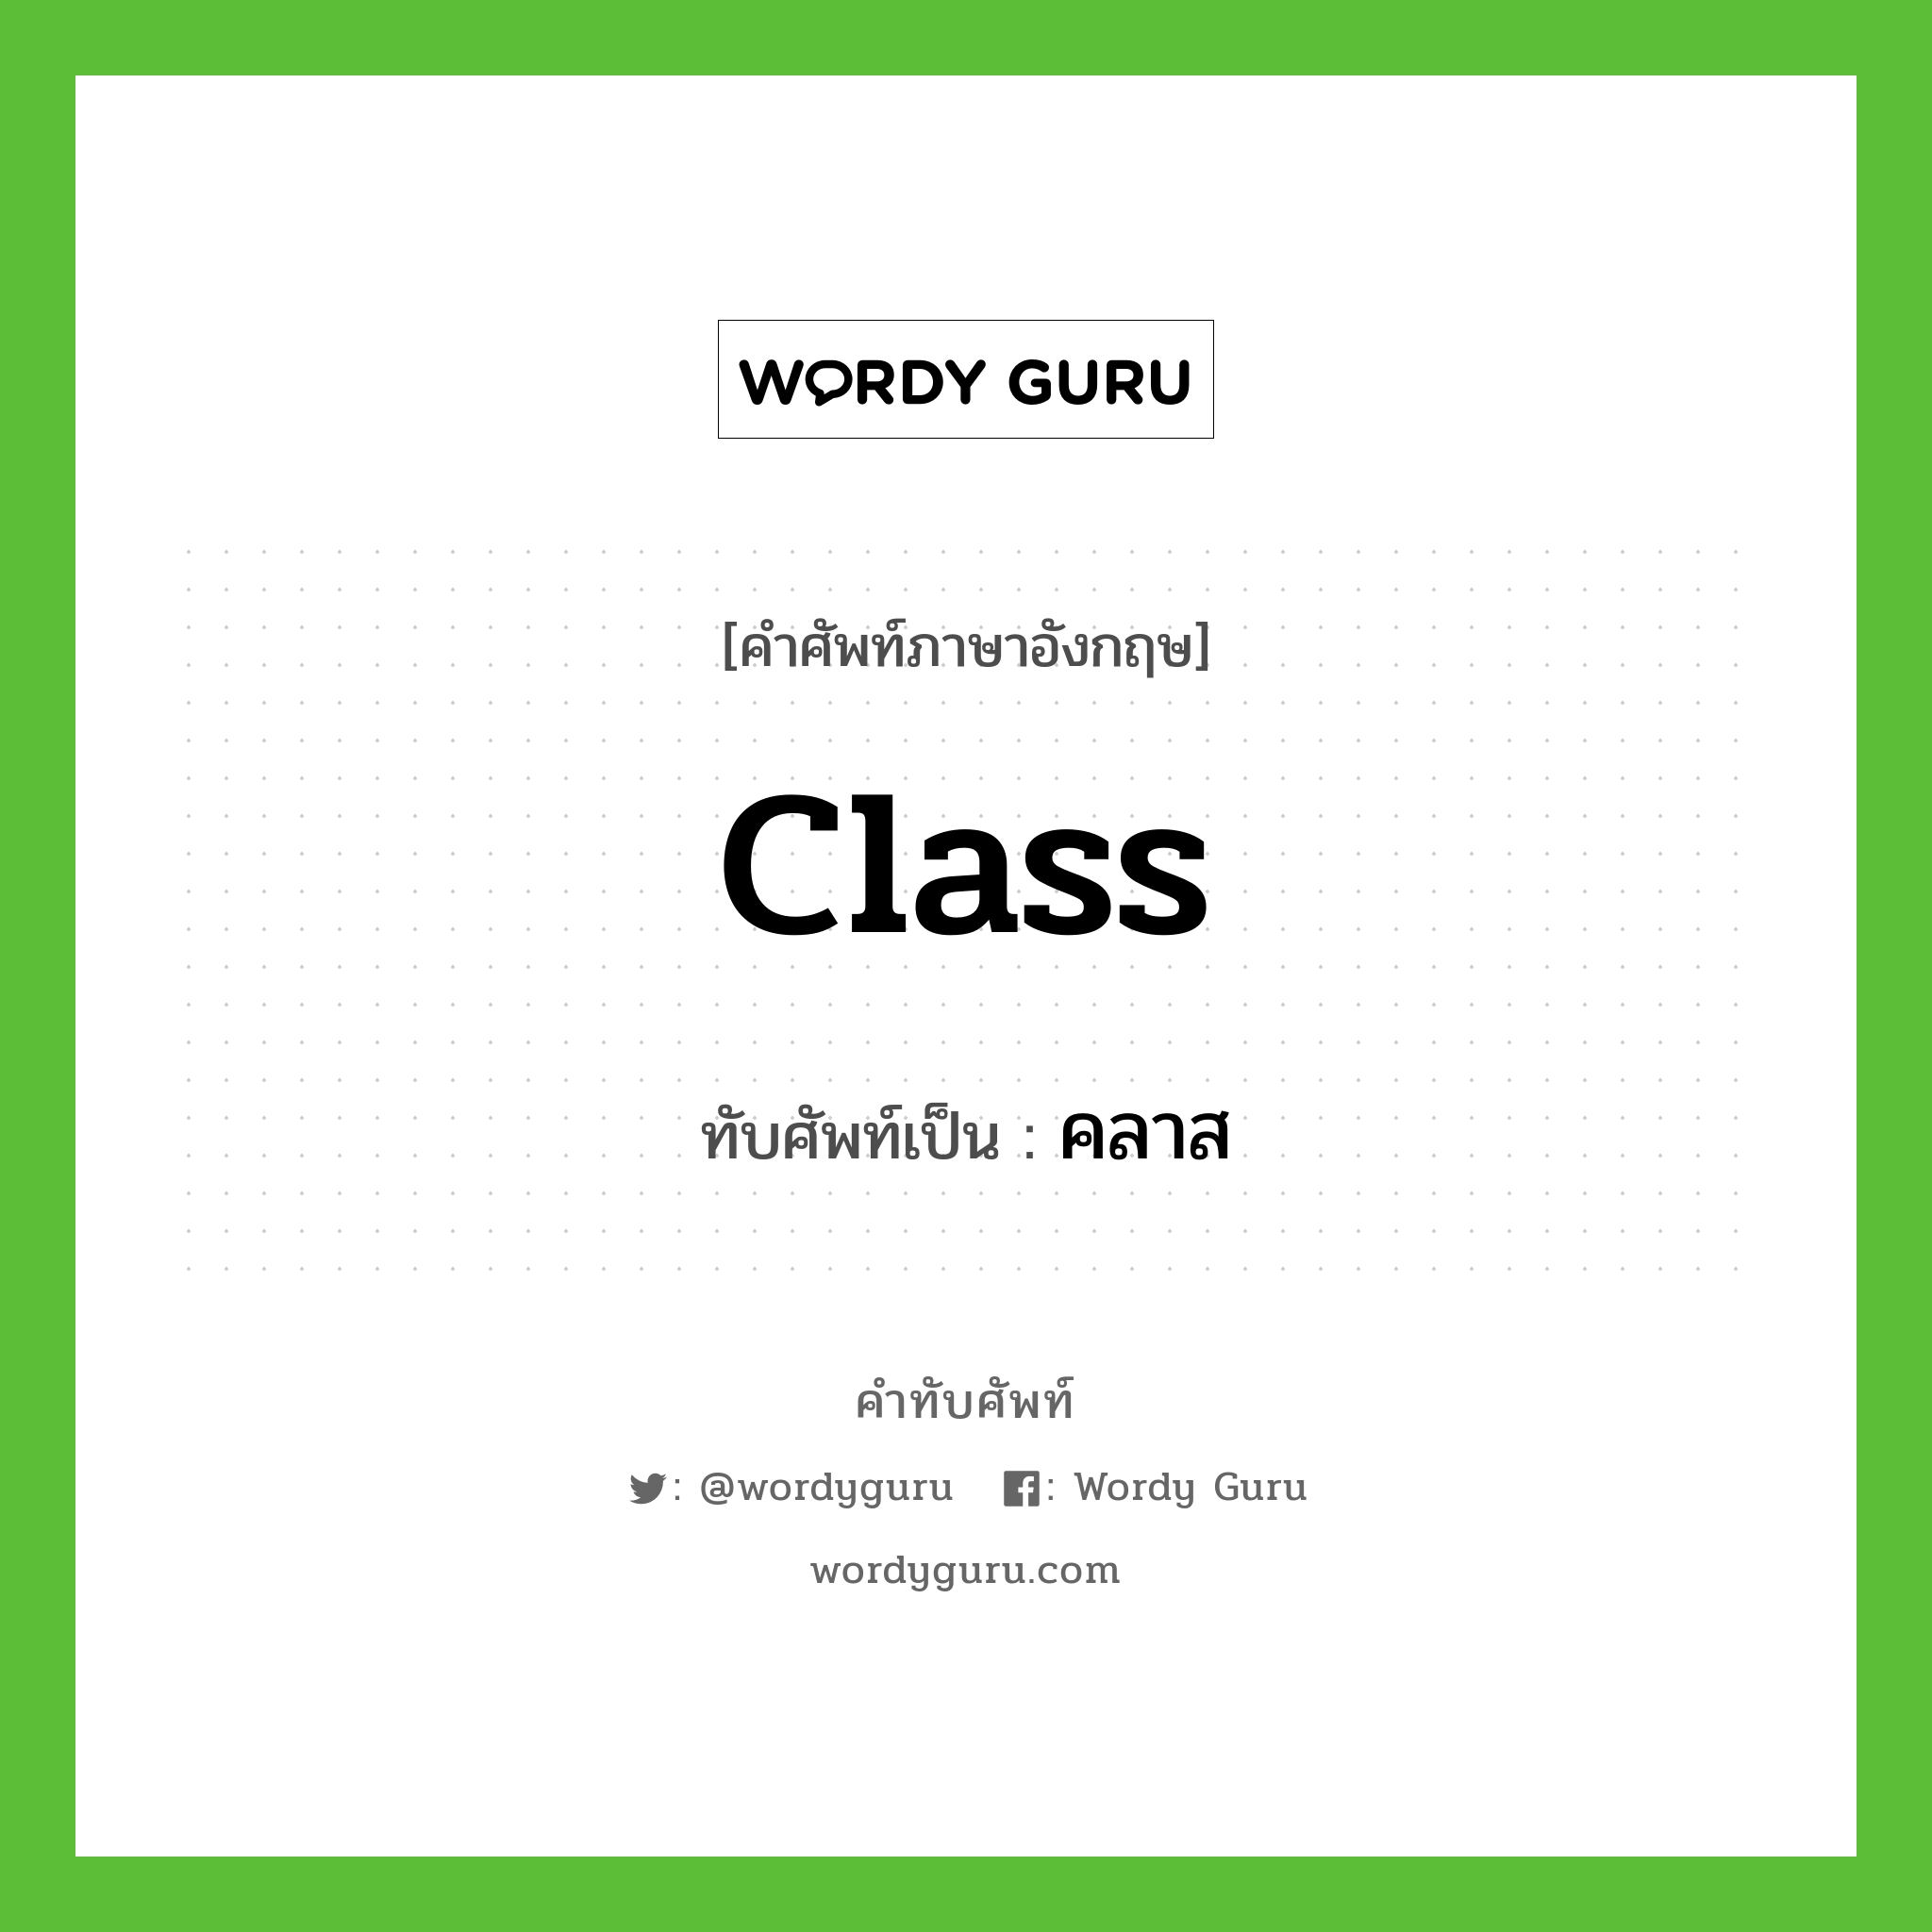 class เขียนเป็นคำไทยว่าอะไร?, คำศัพท์ภาษาอังกฤษ class ทับศัพท์เป็น คลาส